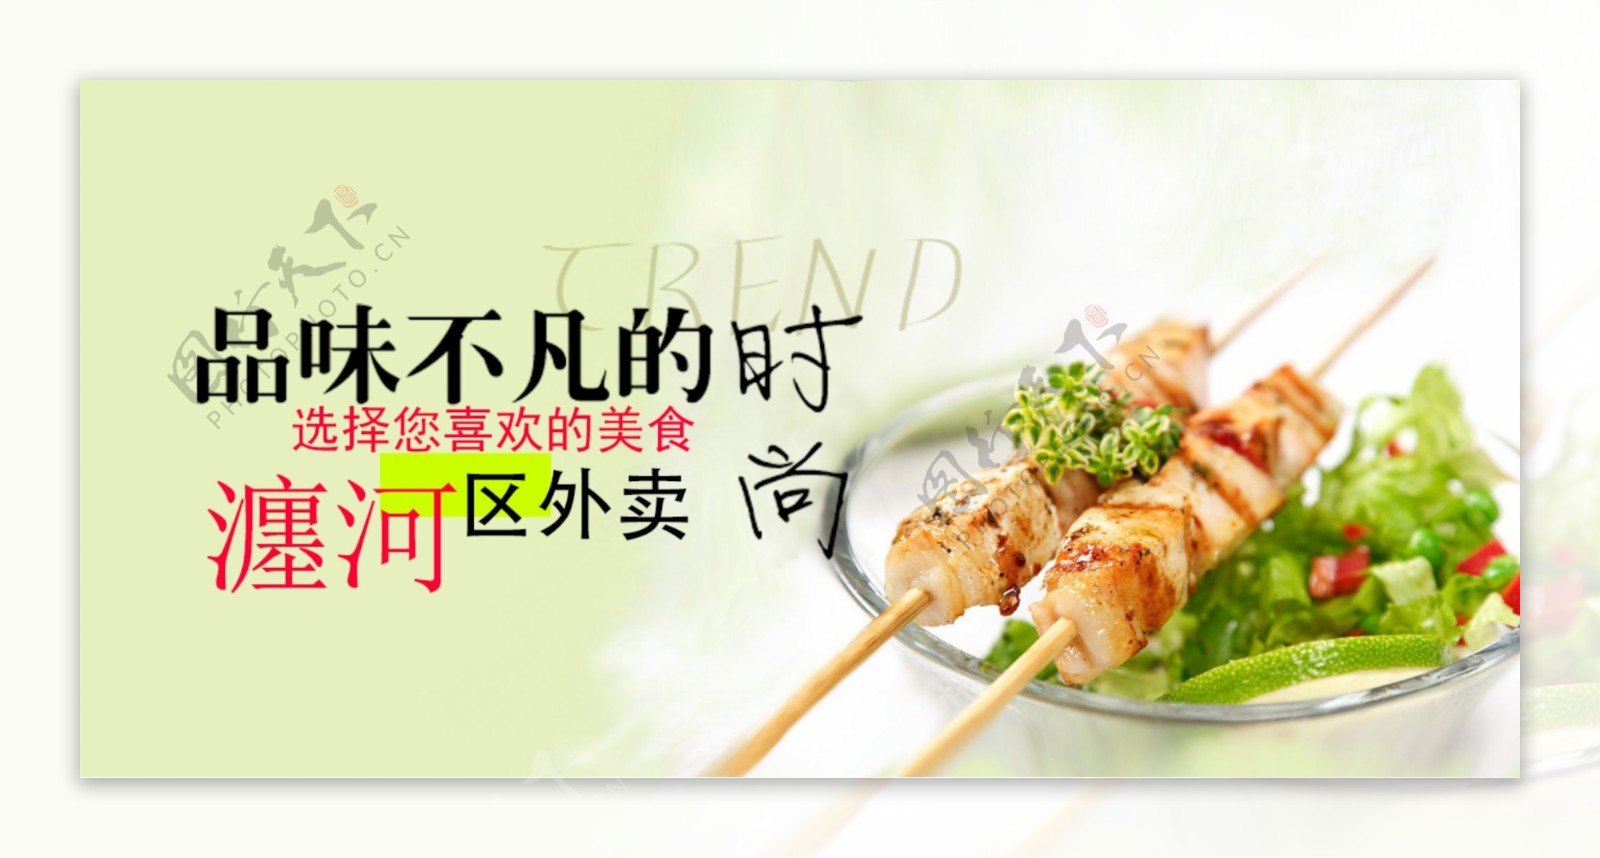 高清肉串外卖美食餐饮海报PSD下载